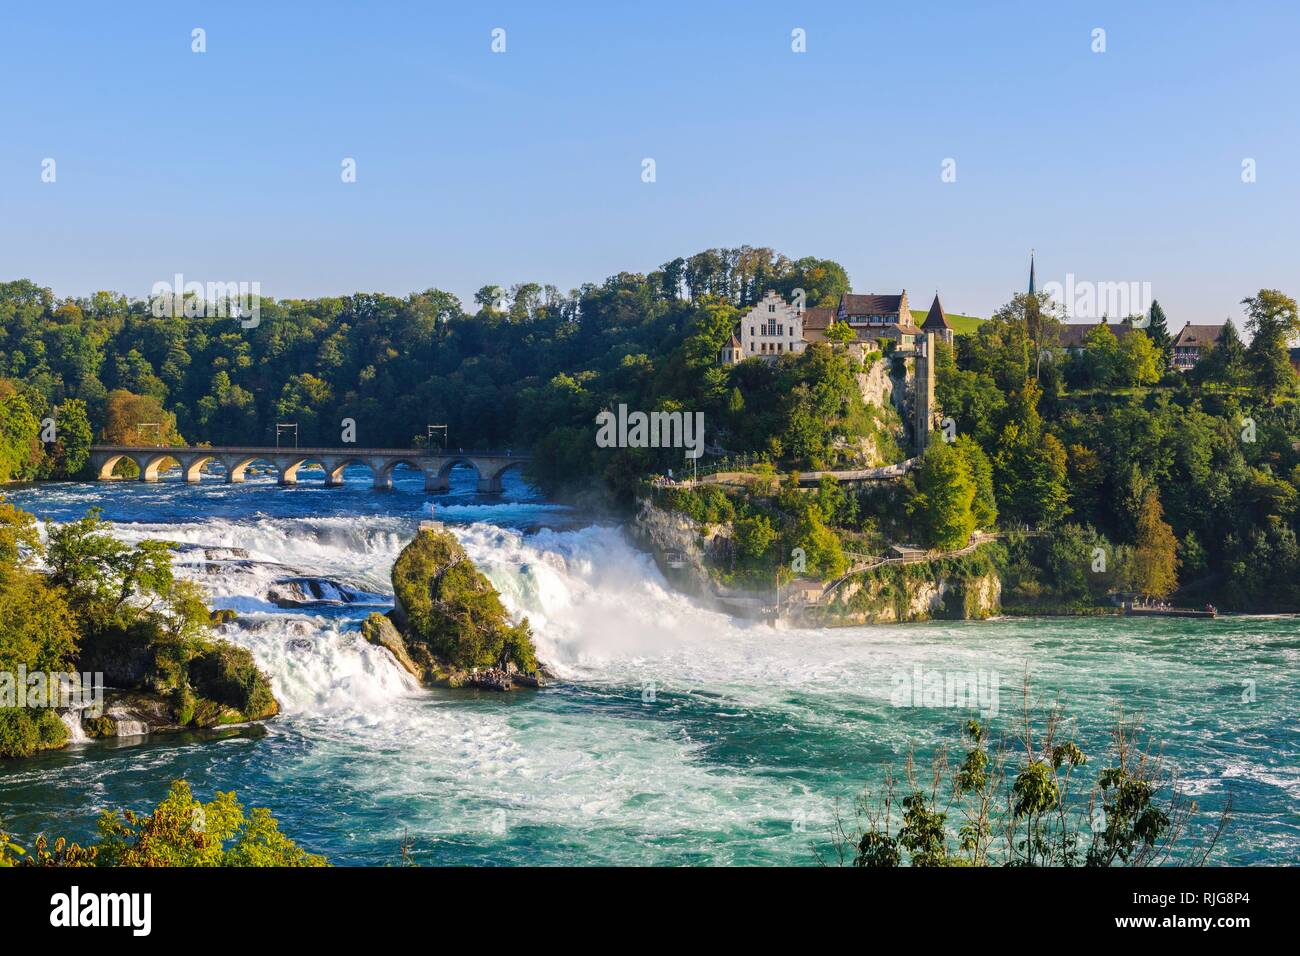 Rhine Falls with Laufen Castle, at Schaffhausen, Canton of Schaffhausen, Switzerland Stock Photo